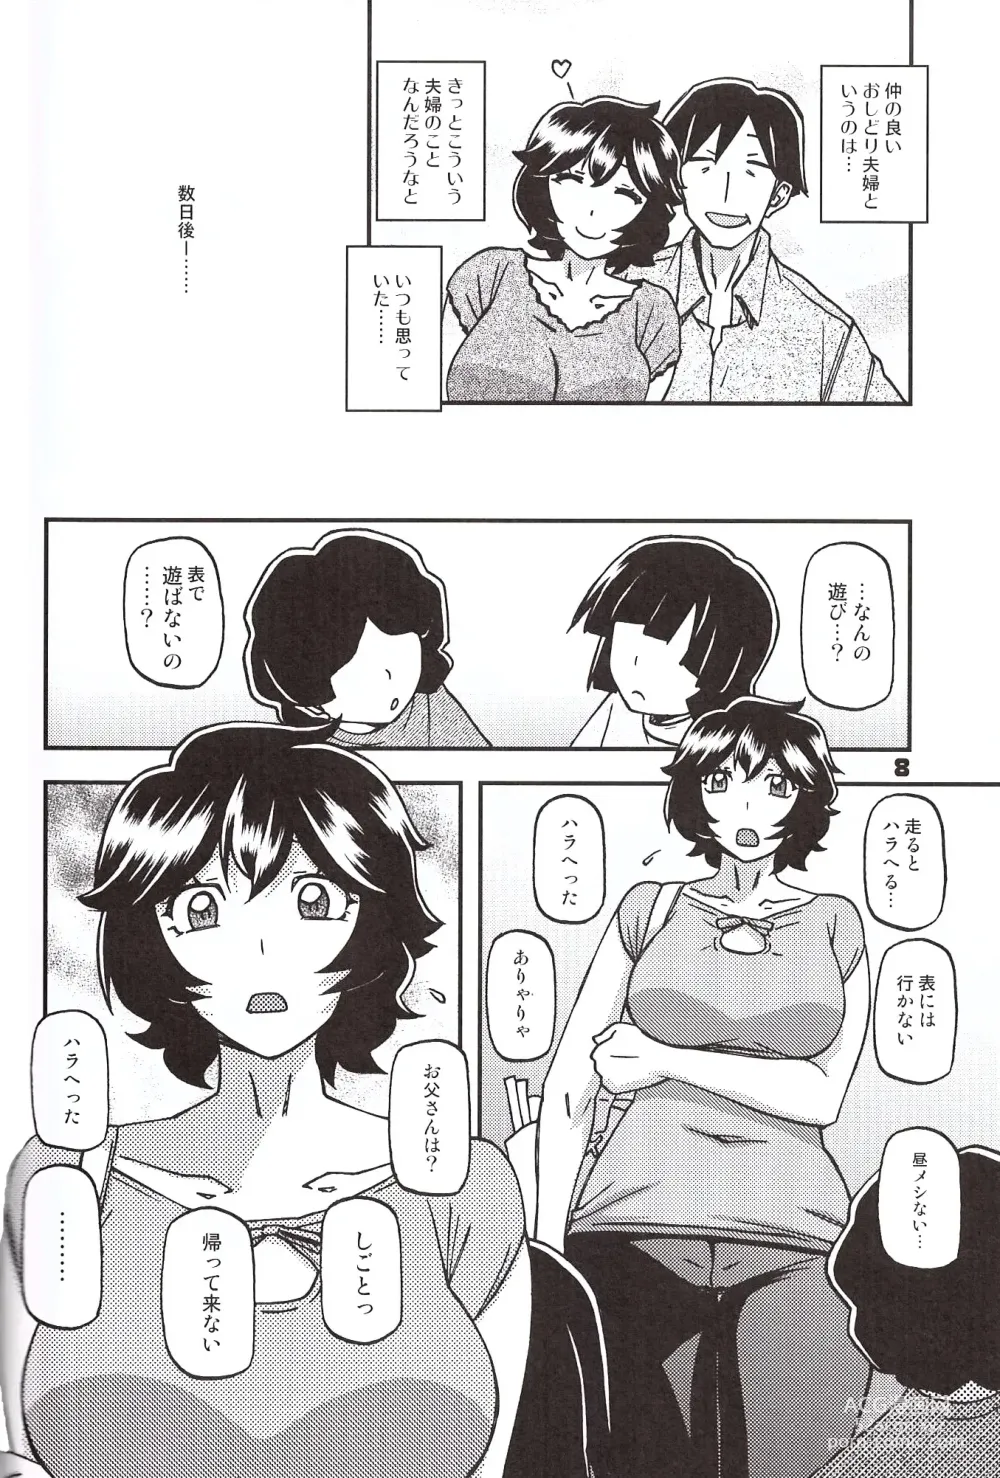 Page 7 of doujinshi Akebi no Mi - Konomi Ch. 1